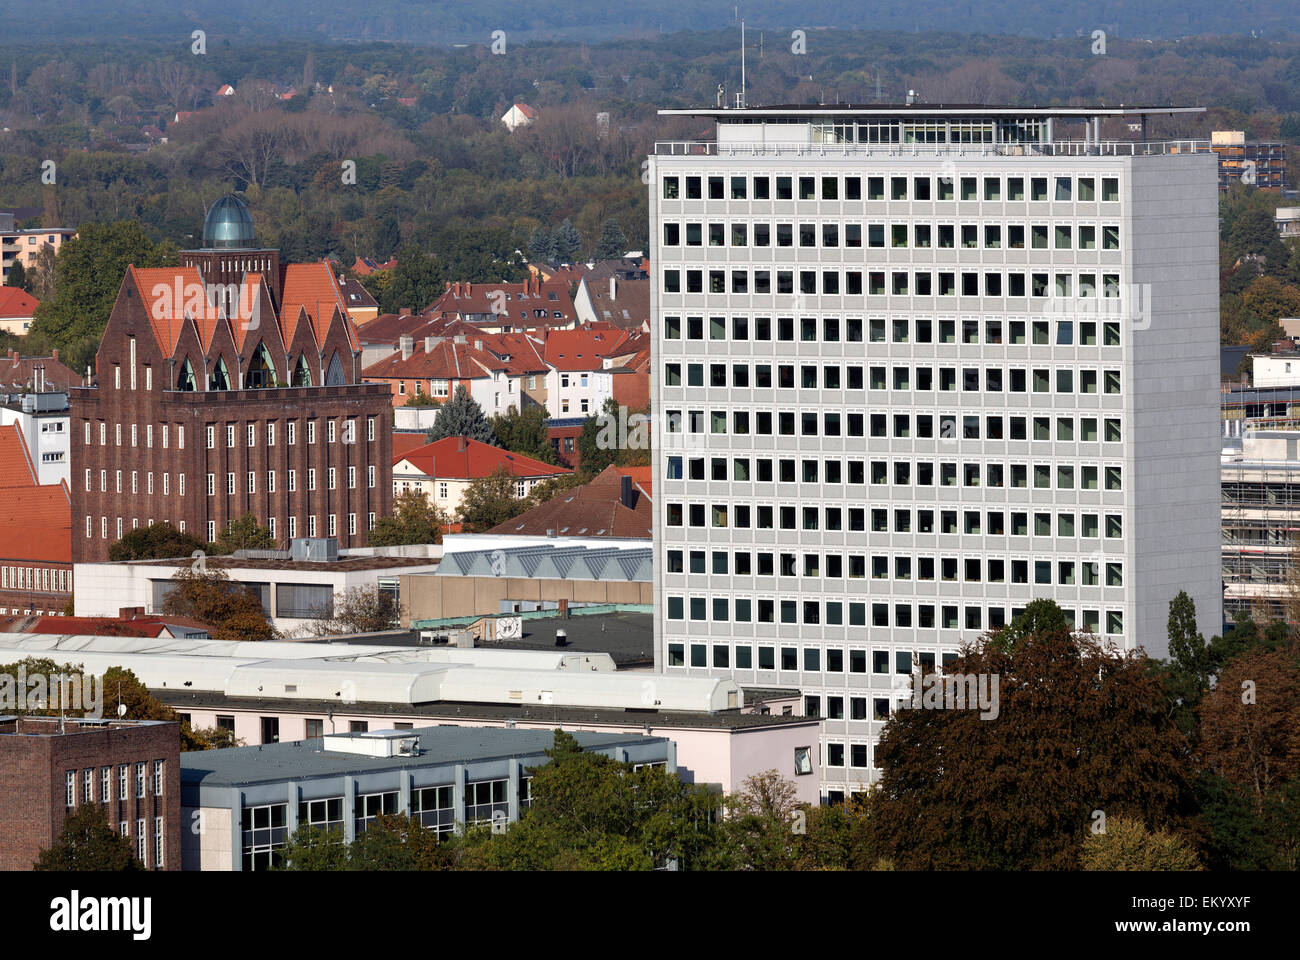 La universidad de Braunschweig de tecnología, facultad de ingeniería civil, construcción Oesterlen, Braunschweig, Baja Sajonia, Alemania Foto de stock